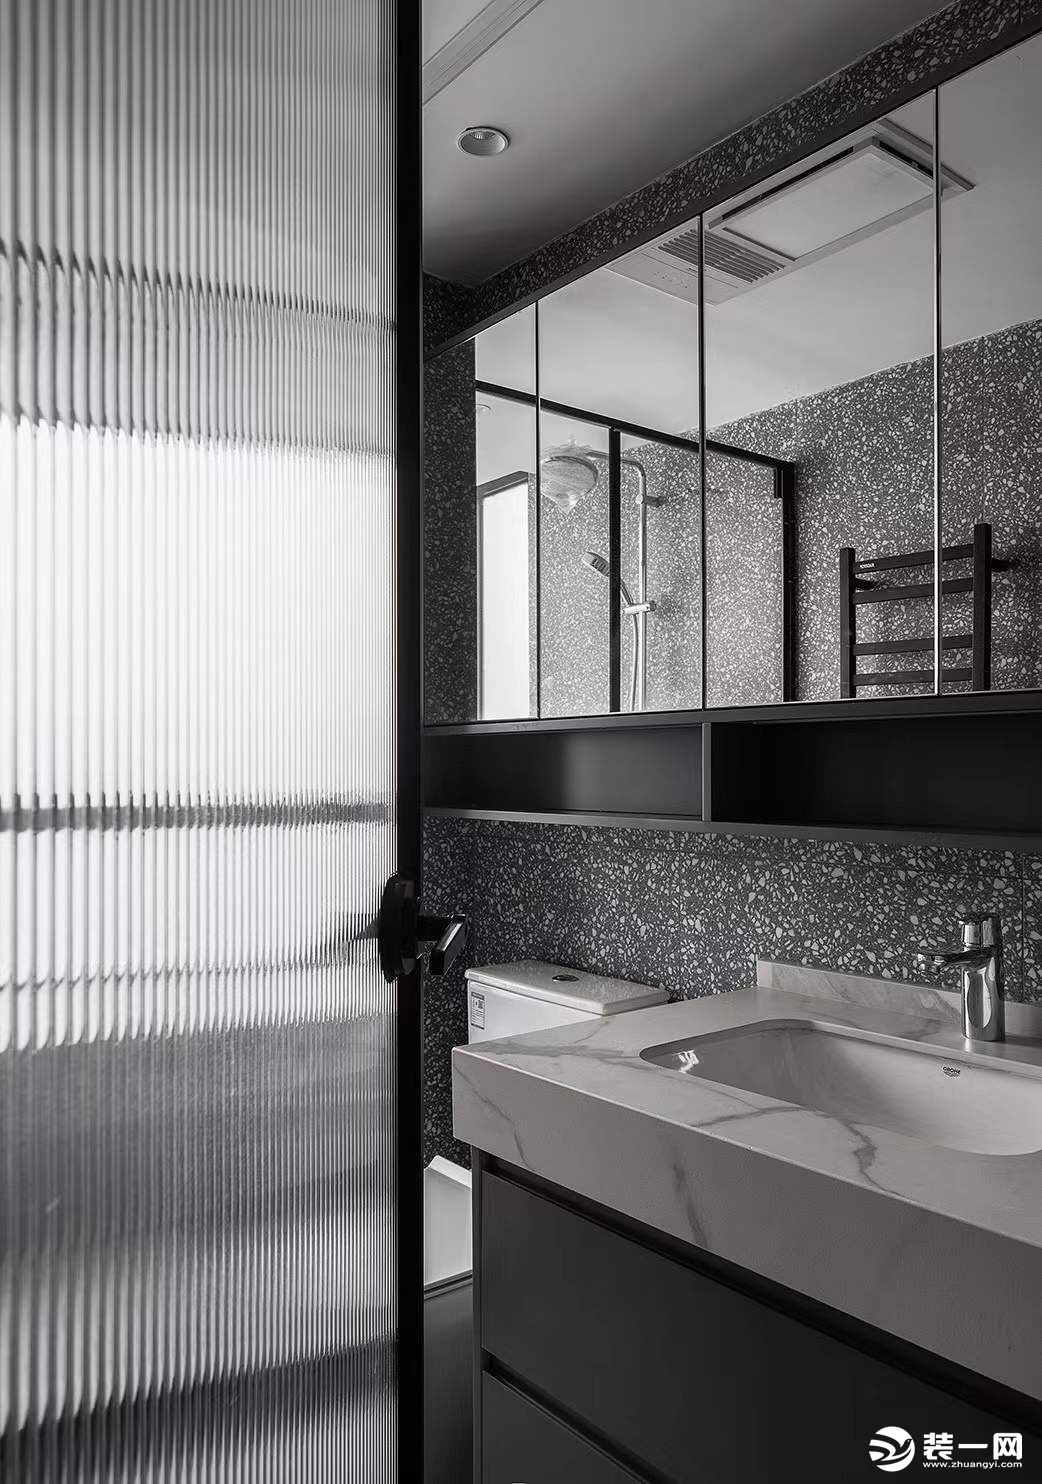 卫生间最重要的是实用性所以在前期设计的时候就考虑了镜柜的足够收纳电热毛巾架淋浴区挡水条和砖的一体性看